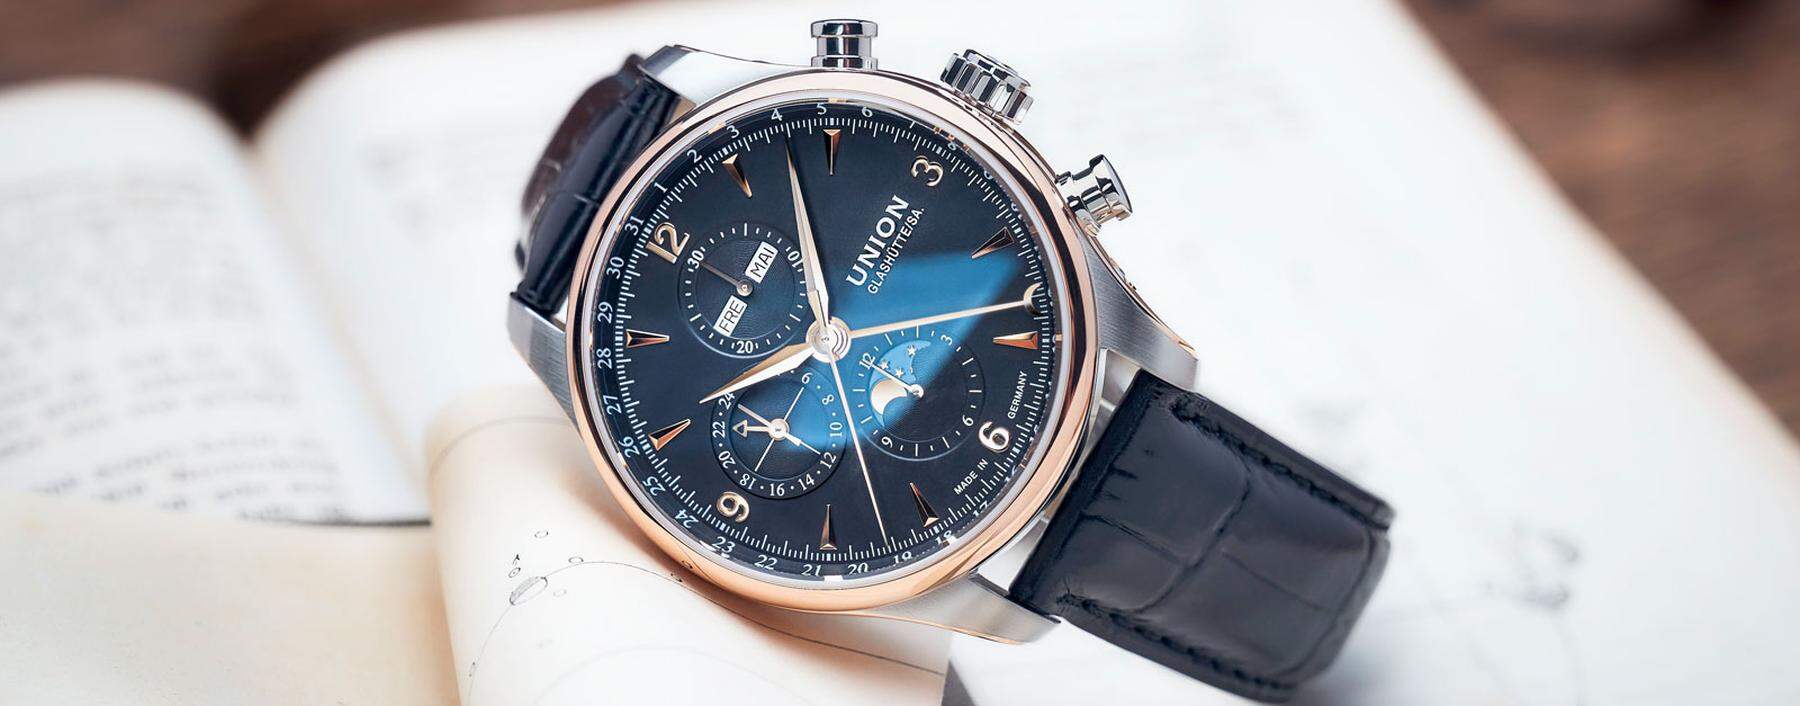 Inspiriert vom nächtlichen Himmelsschauspiel, präsentiert die deutsche Uhrenmarke zwei attraktive Versionen ihres Vollkalender-Chronografen mit nachtschwarzem Zifferblatt.